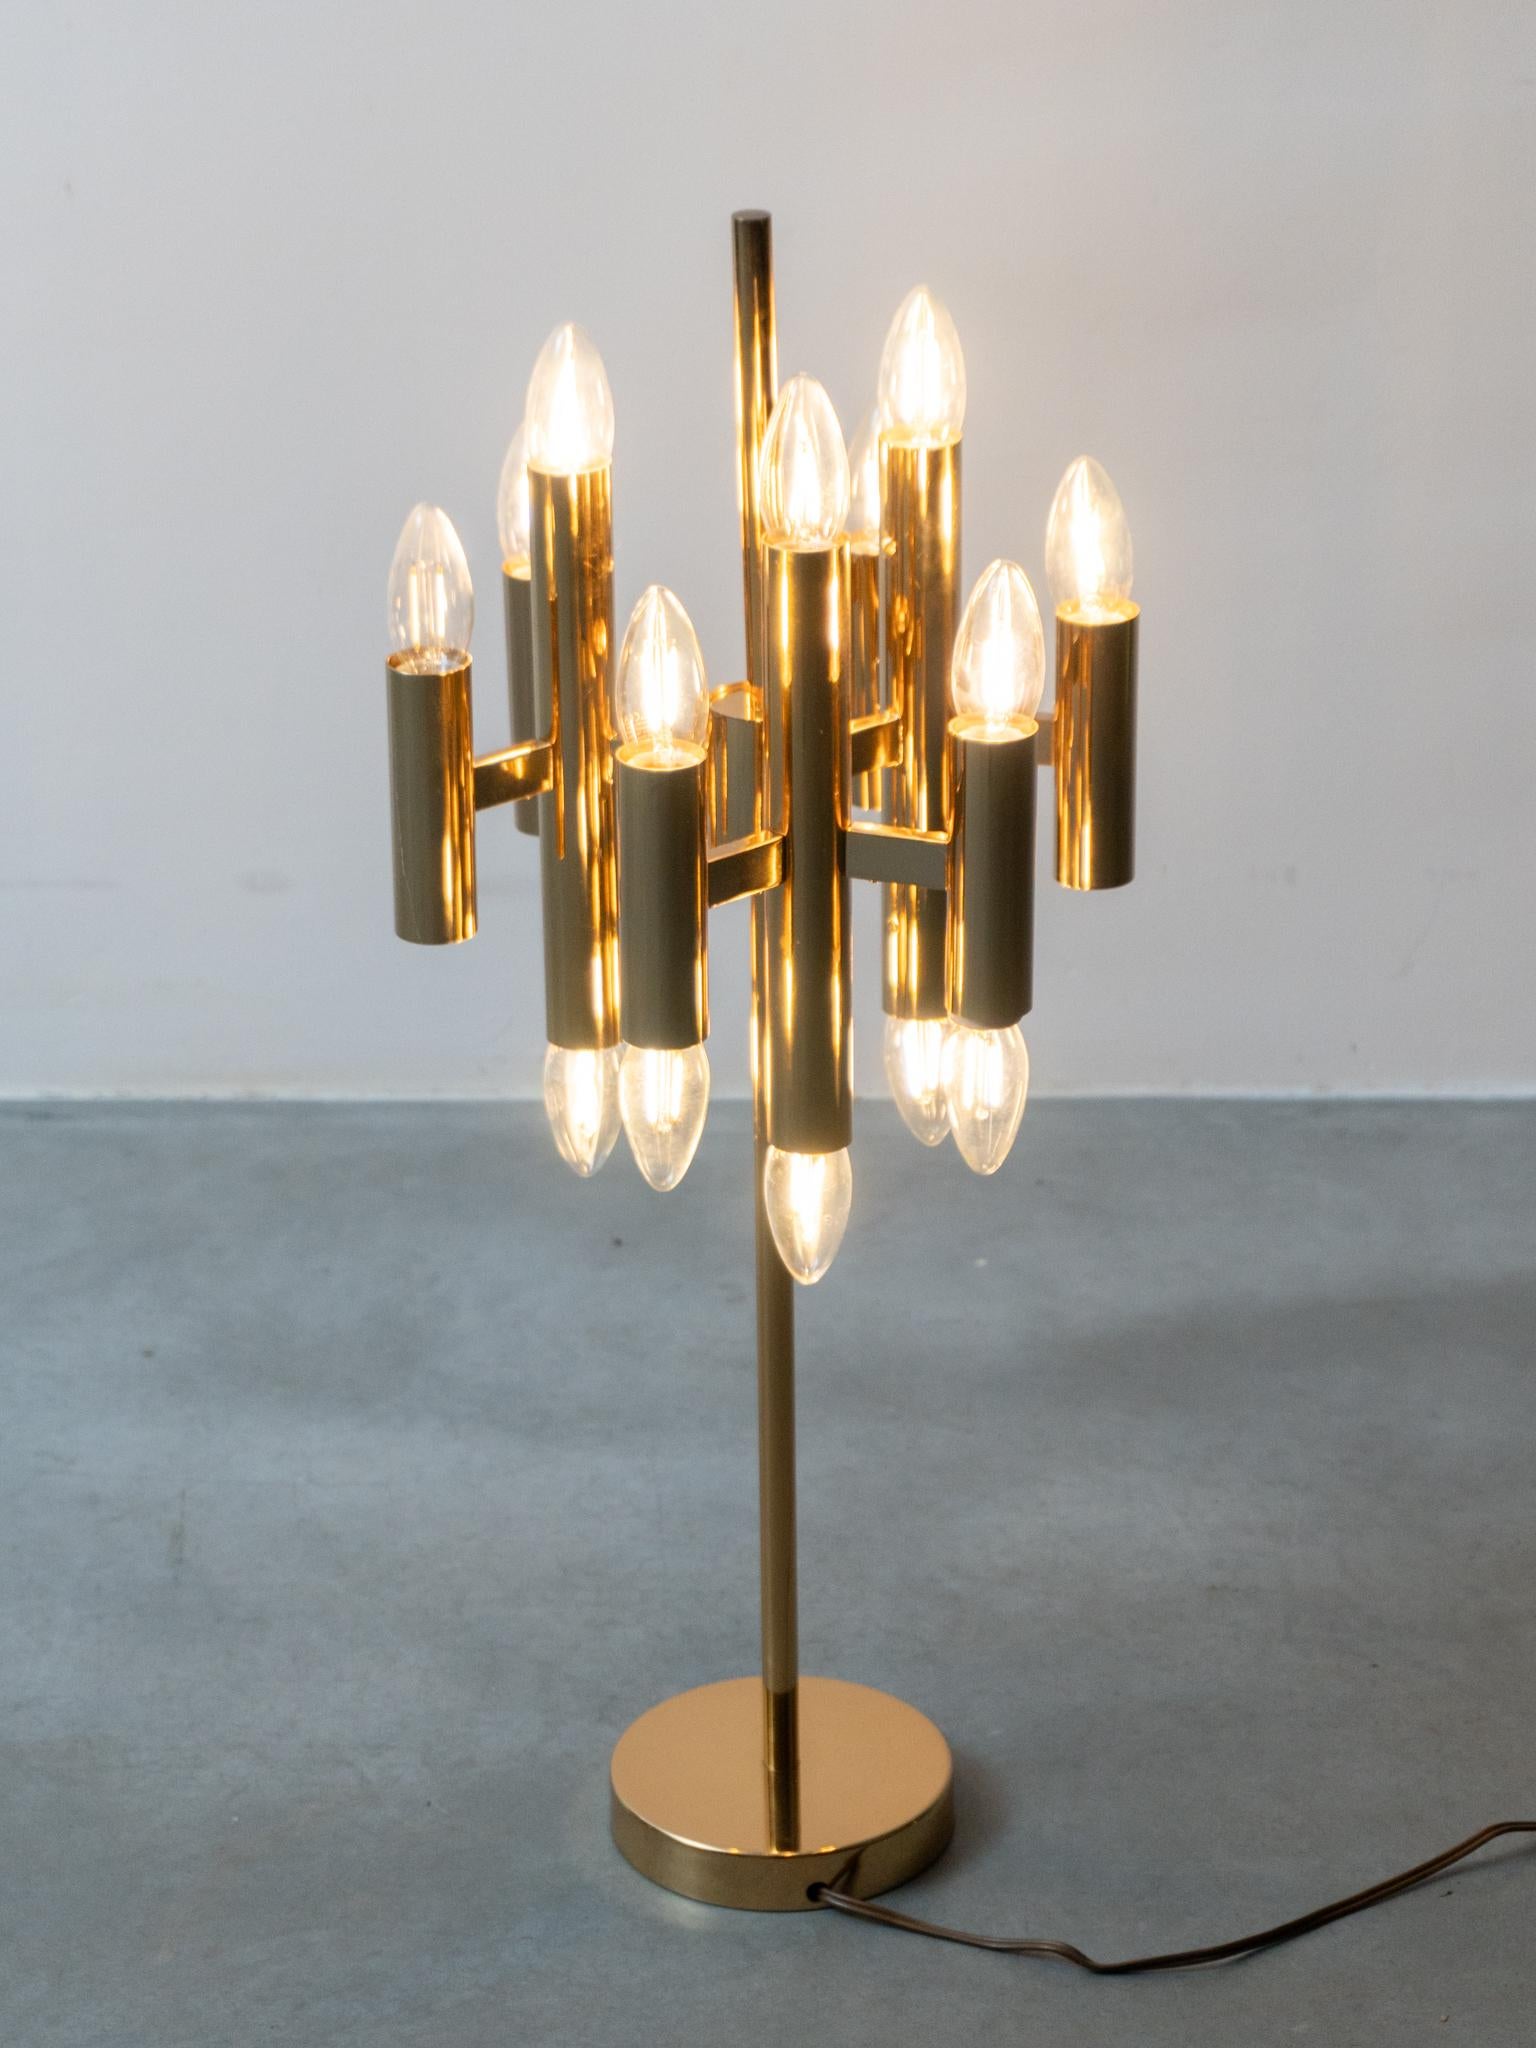 Les lampes de table sculpturales modernistes de Gaetano Sciolari pour Eleg sont d'une élégante simplicité grâce à l'association de finitions en laiton et en or. Composée d'une base ronde plaquée laiton avec 9 tubes en laiton décalés pour un effet